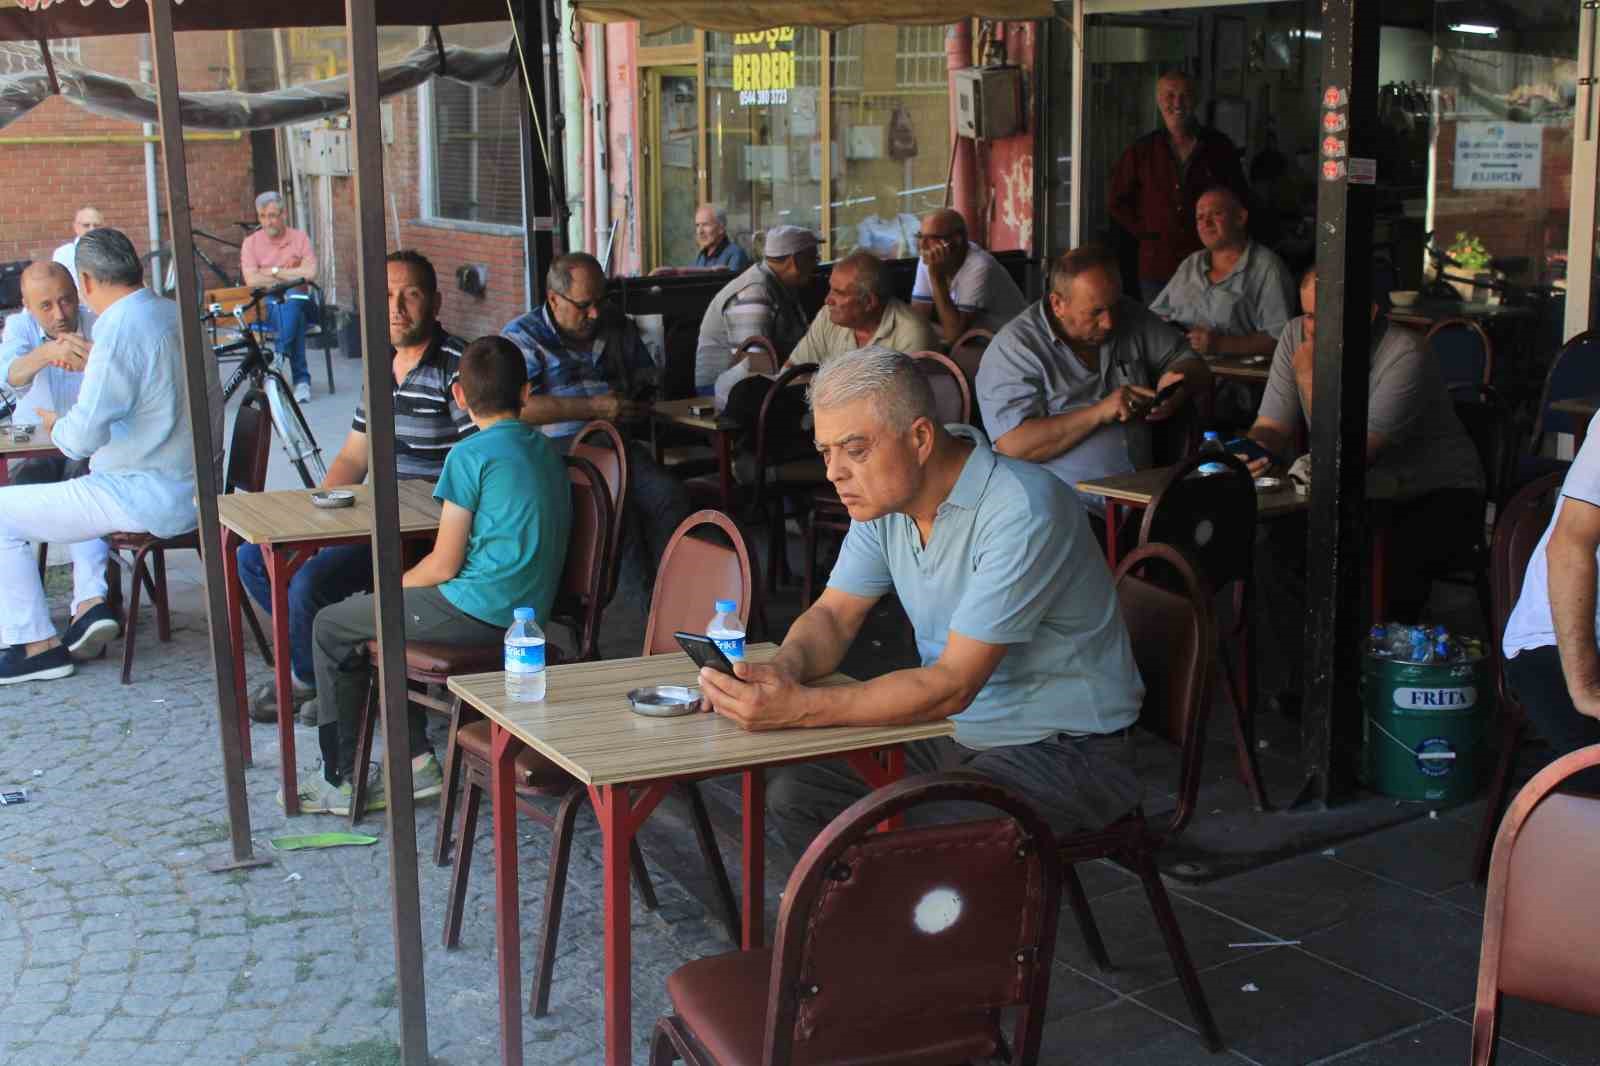 Eskişehir’de kıraathane sohbetleri kültürü hâlâ yaşatılıyor